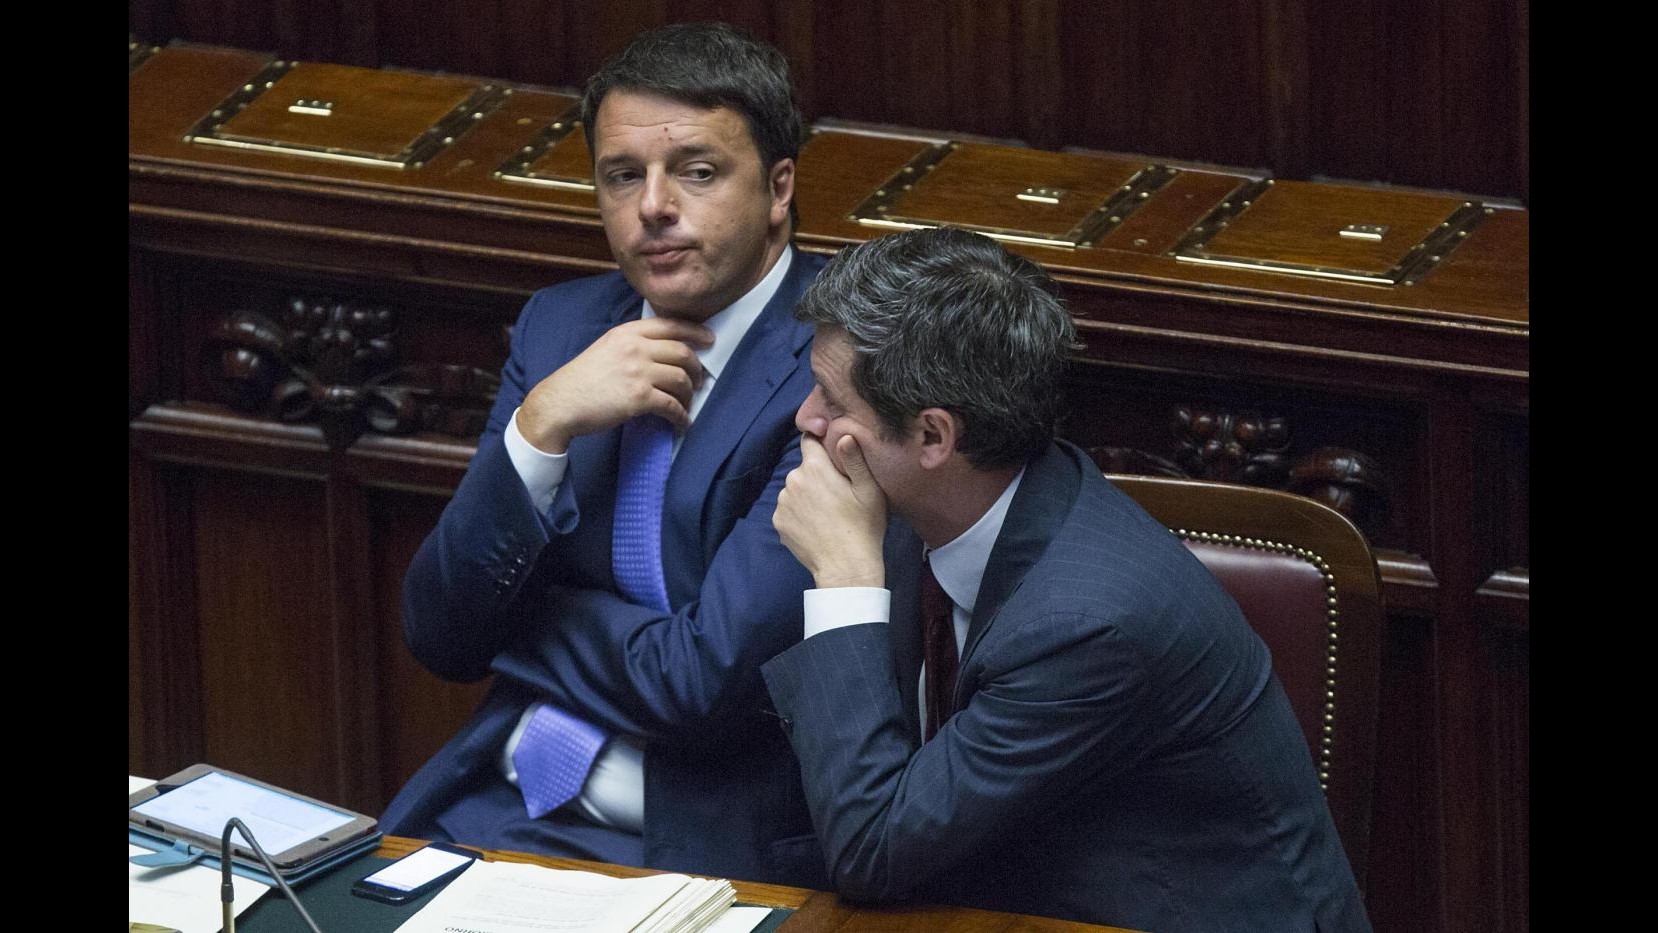 Lavoro, Renzi: La legislazione attuale è iniqua